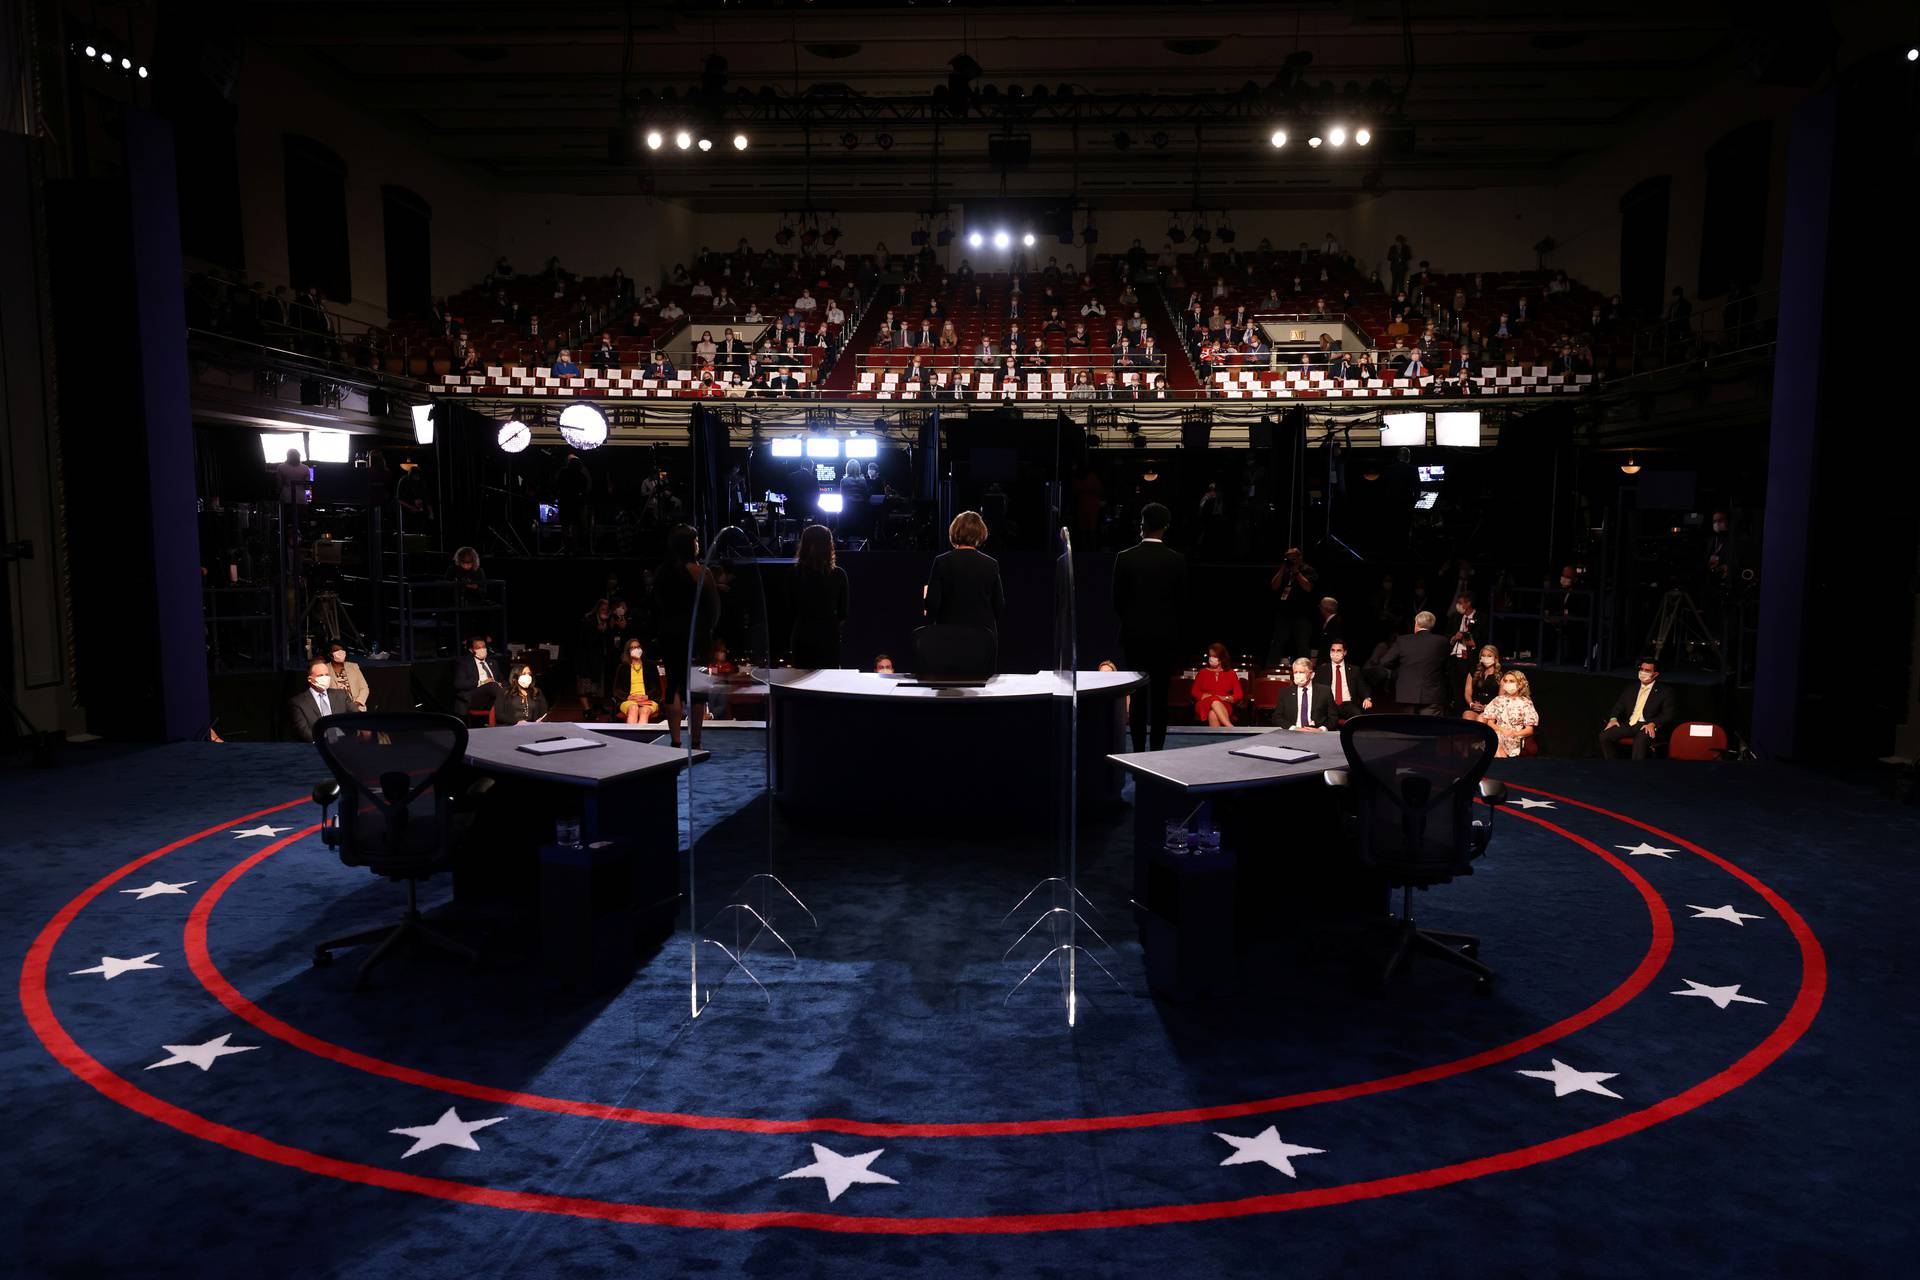 2020 vice presidential debate in Salt Lake City